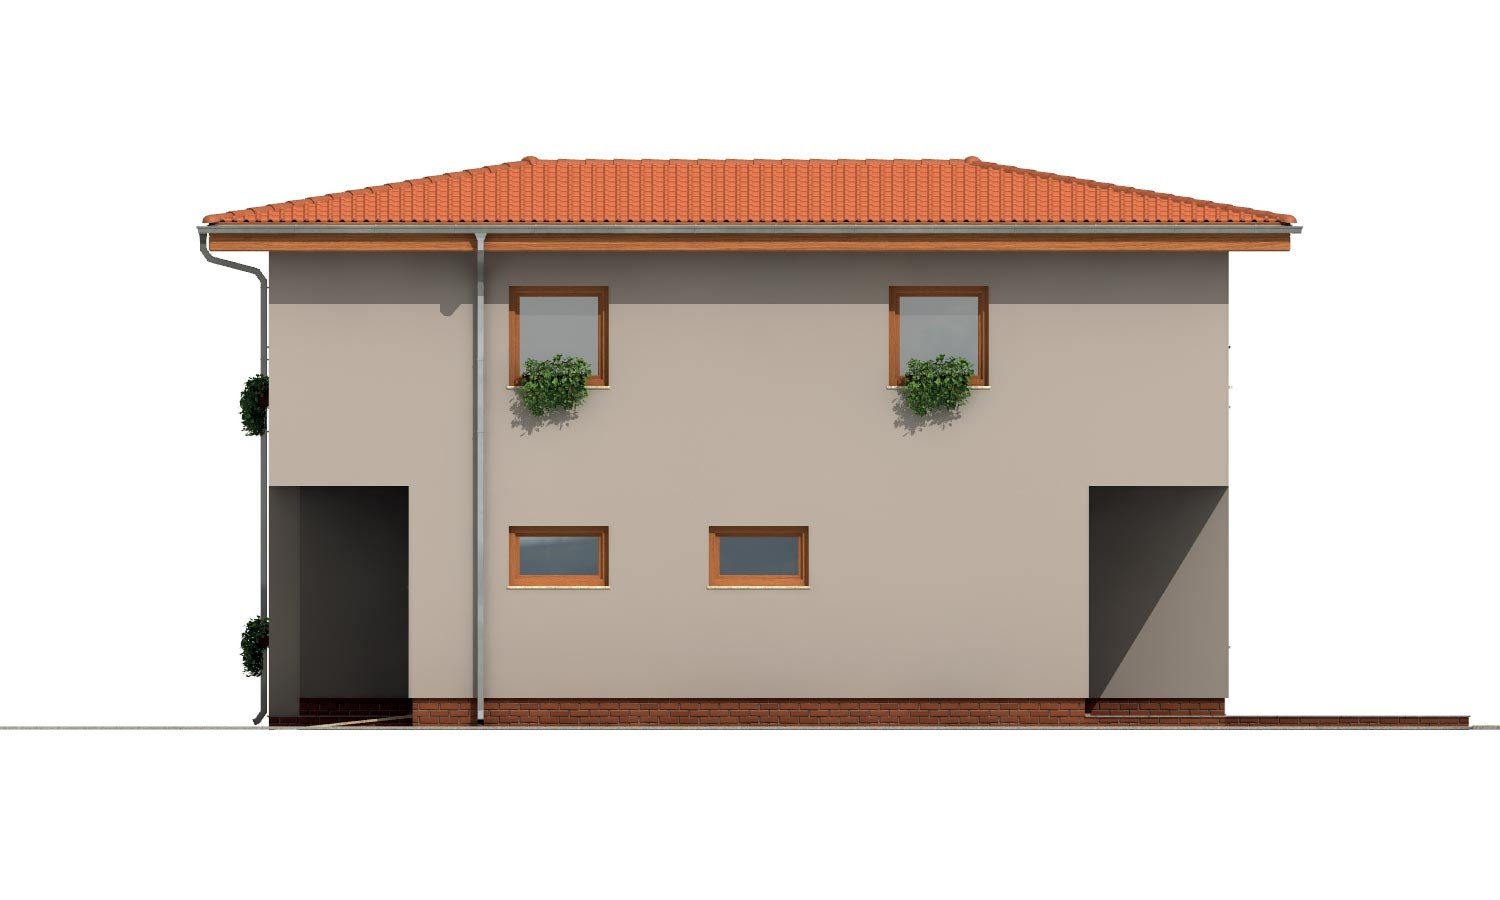 Zrkadlový pohľad 4. - Moderní poschoďový dům s garáží a obytnou terasou na patře.